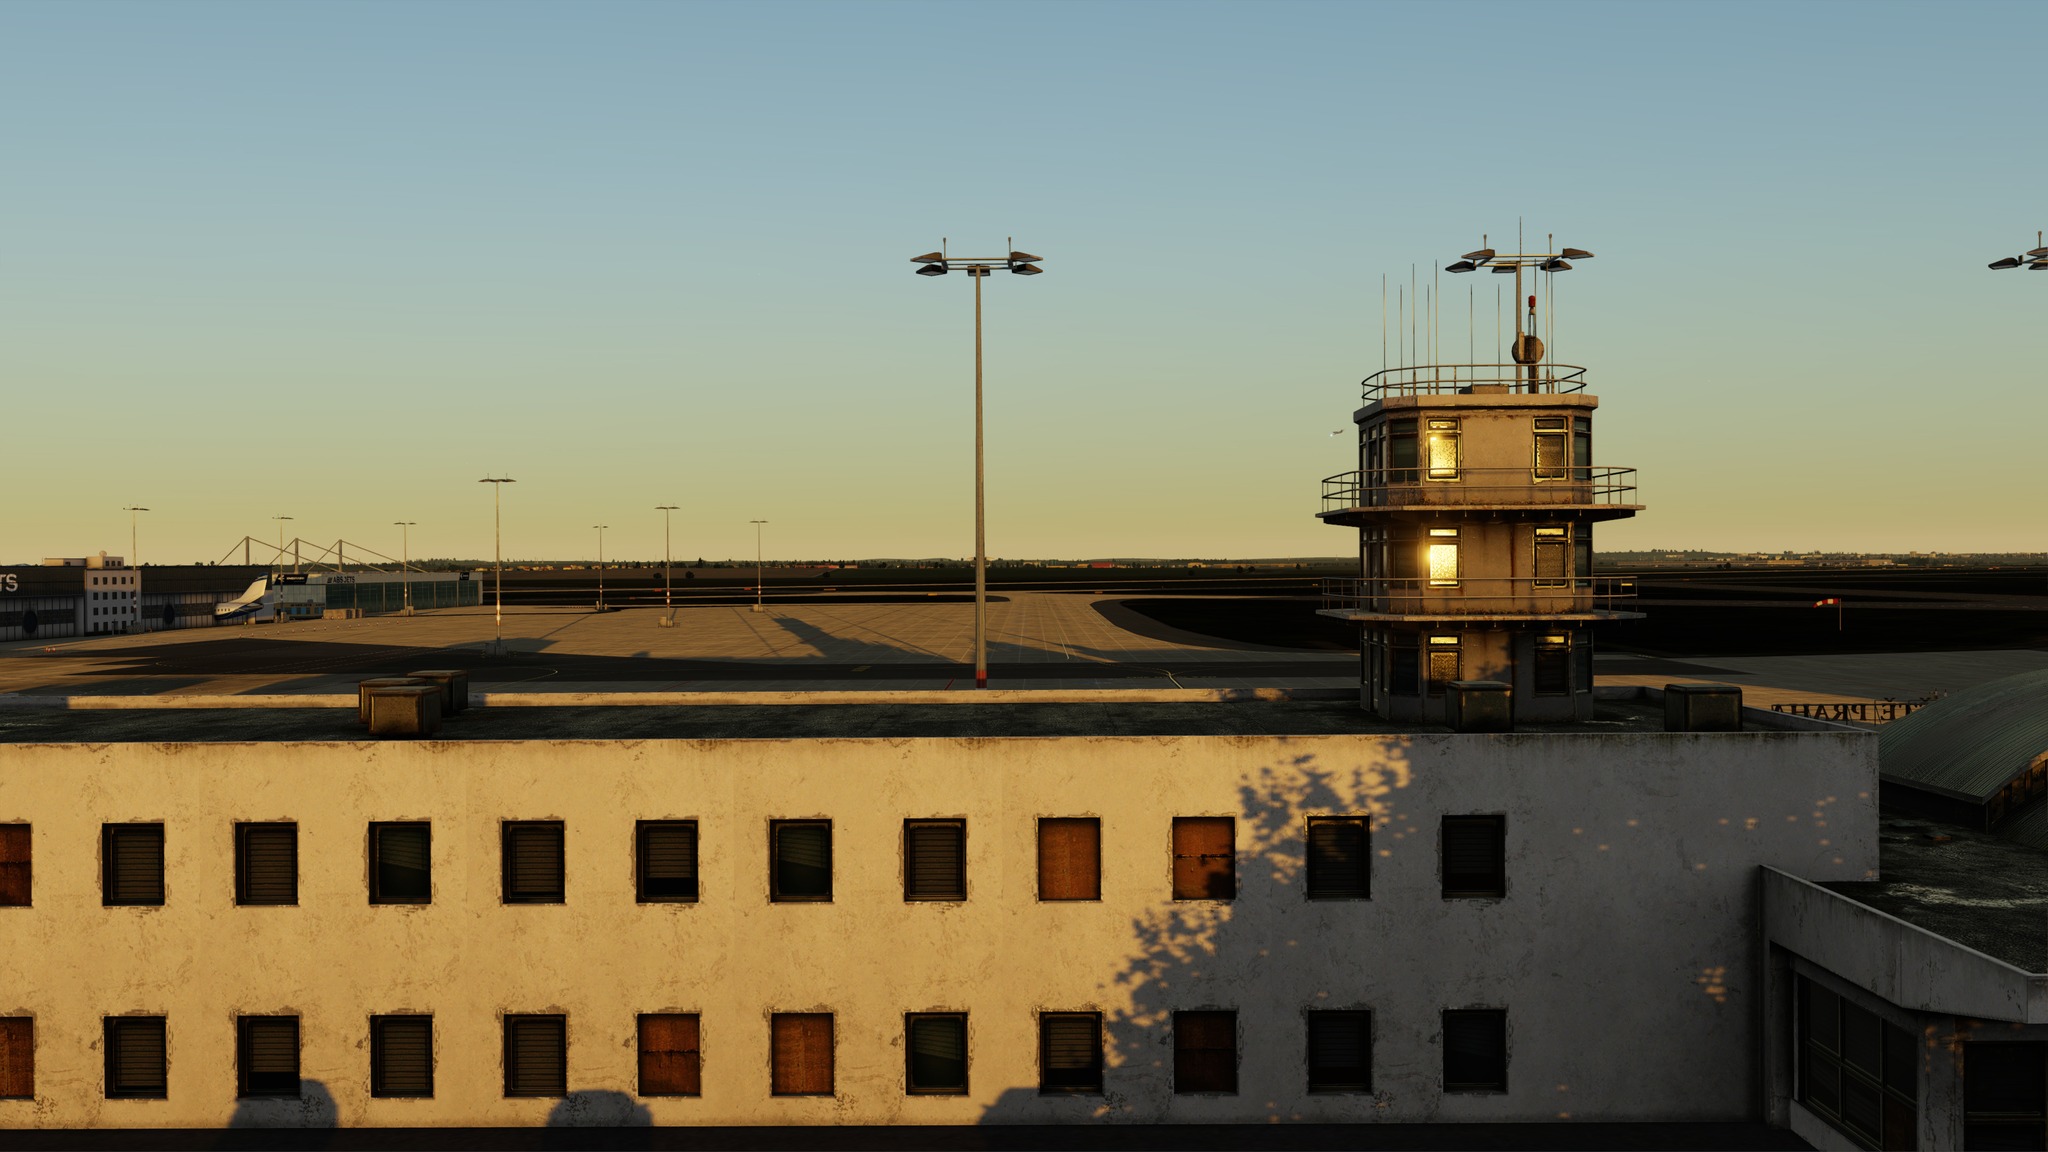 Orbx Previews Prague Airport for P3D - Orbx, Microsoft Flight Simulator